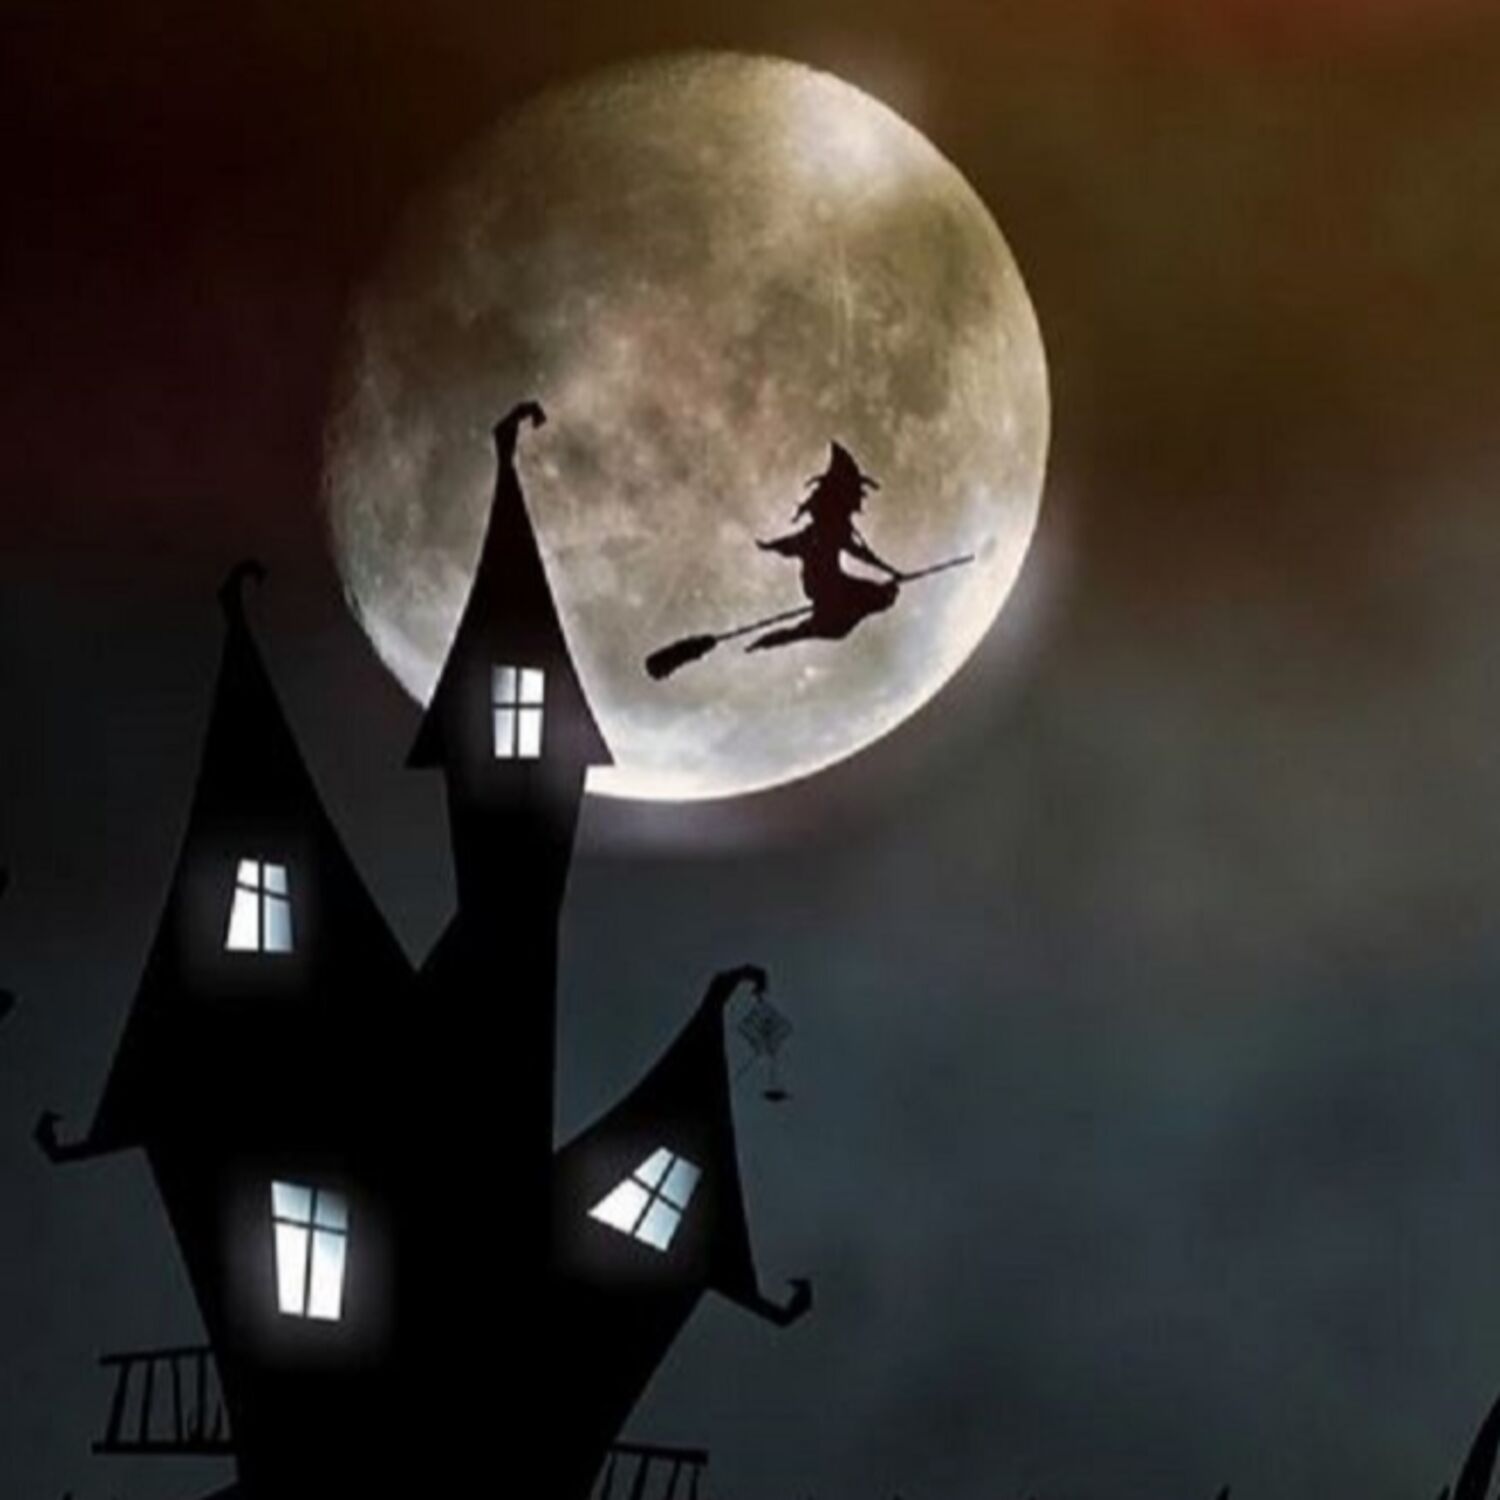 Spécial Halloween : "La sorcière de la nuit du samedi" risque de rôder dans la région ce week-end...